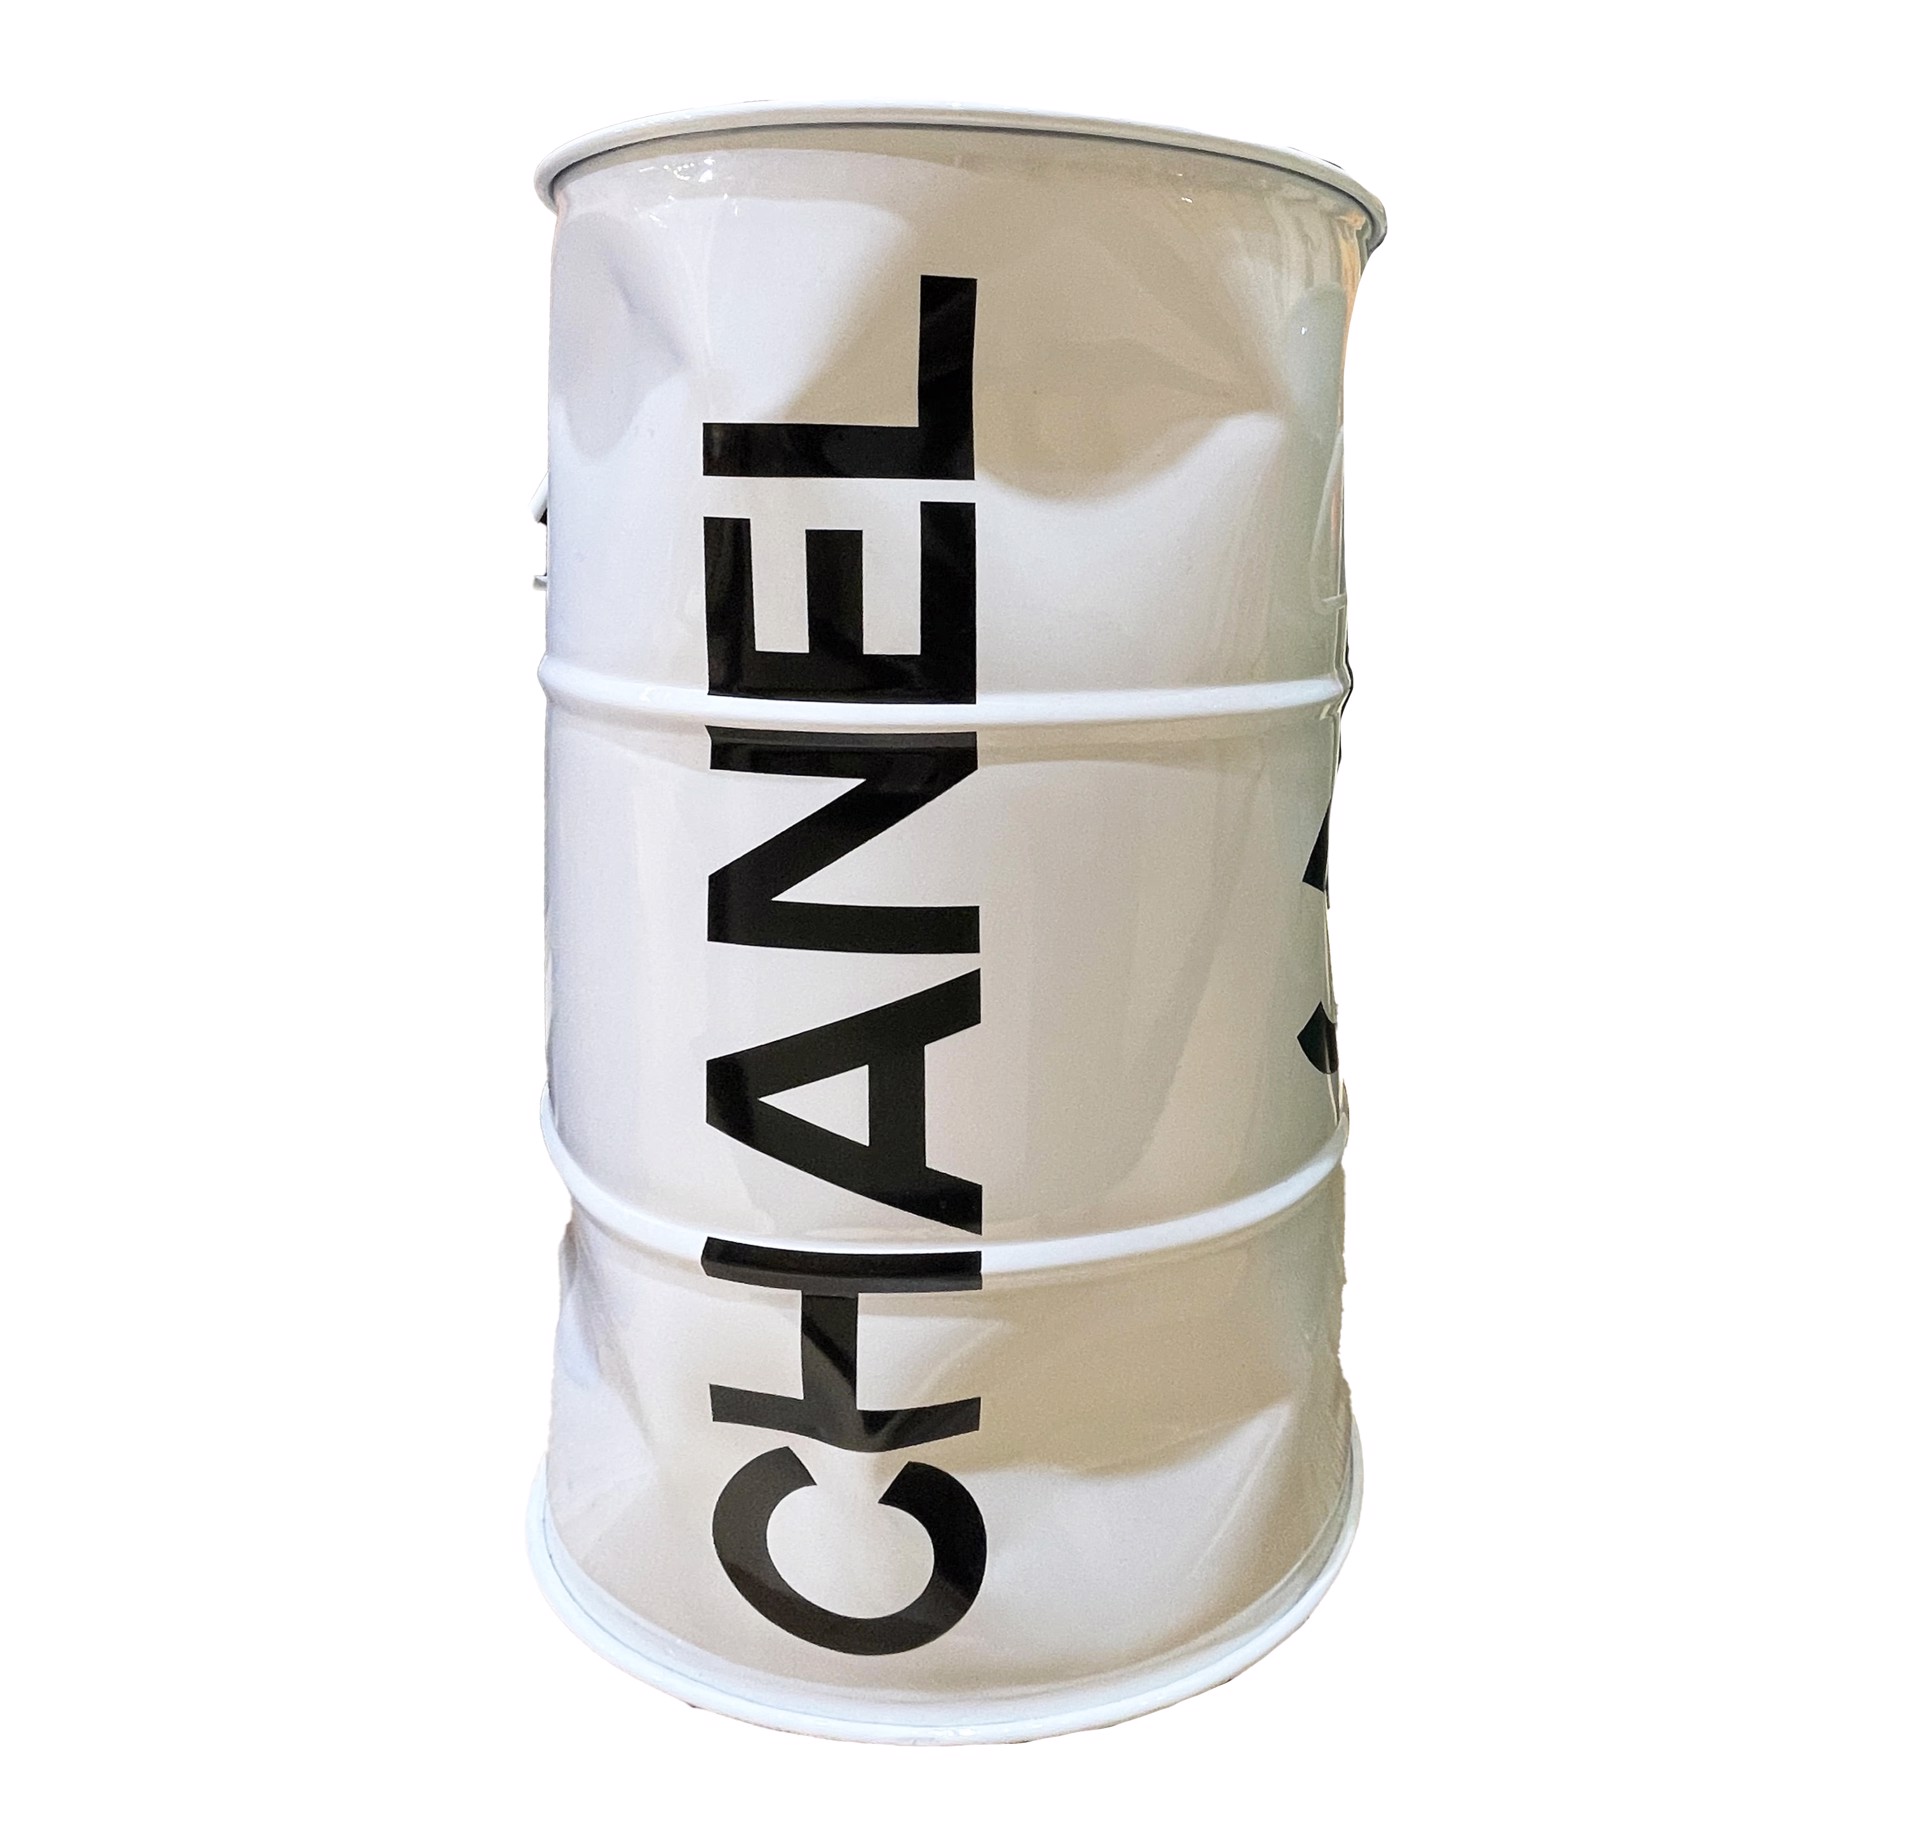 "Mini Chanel Barrel" by Brand Logo Barrels by Efi Mashiah